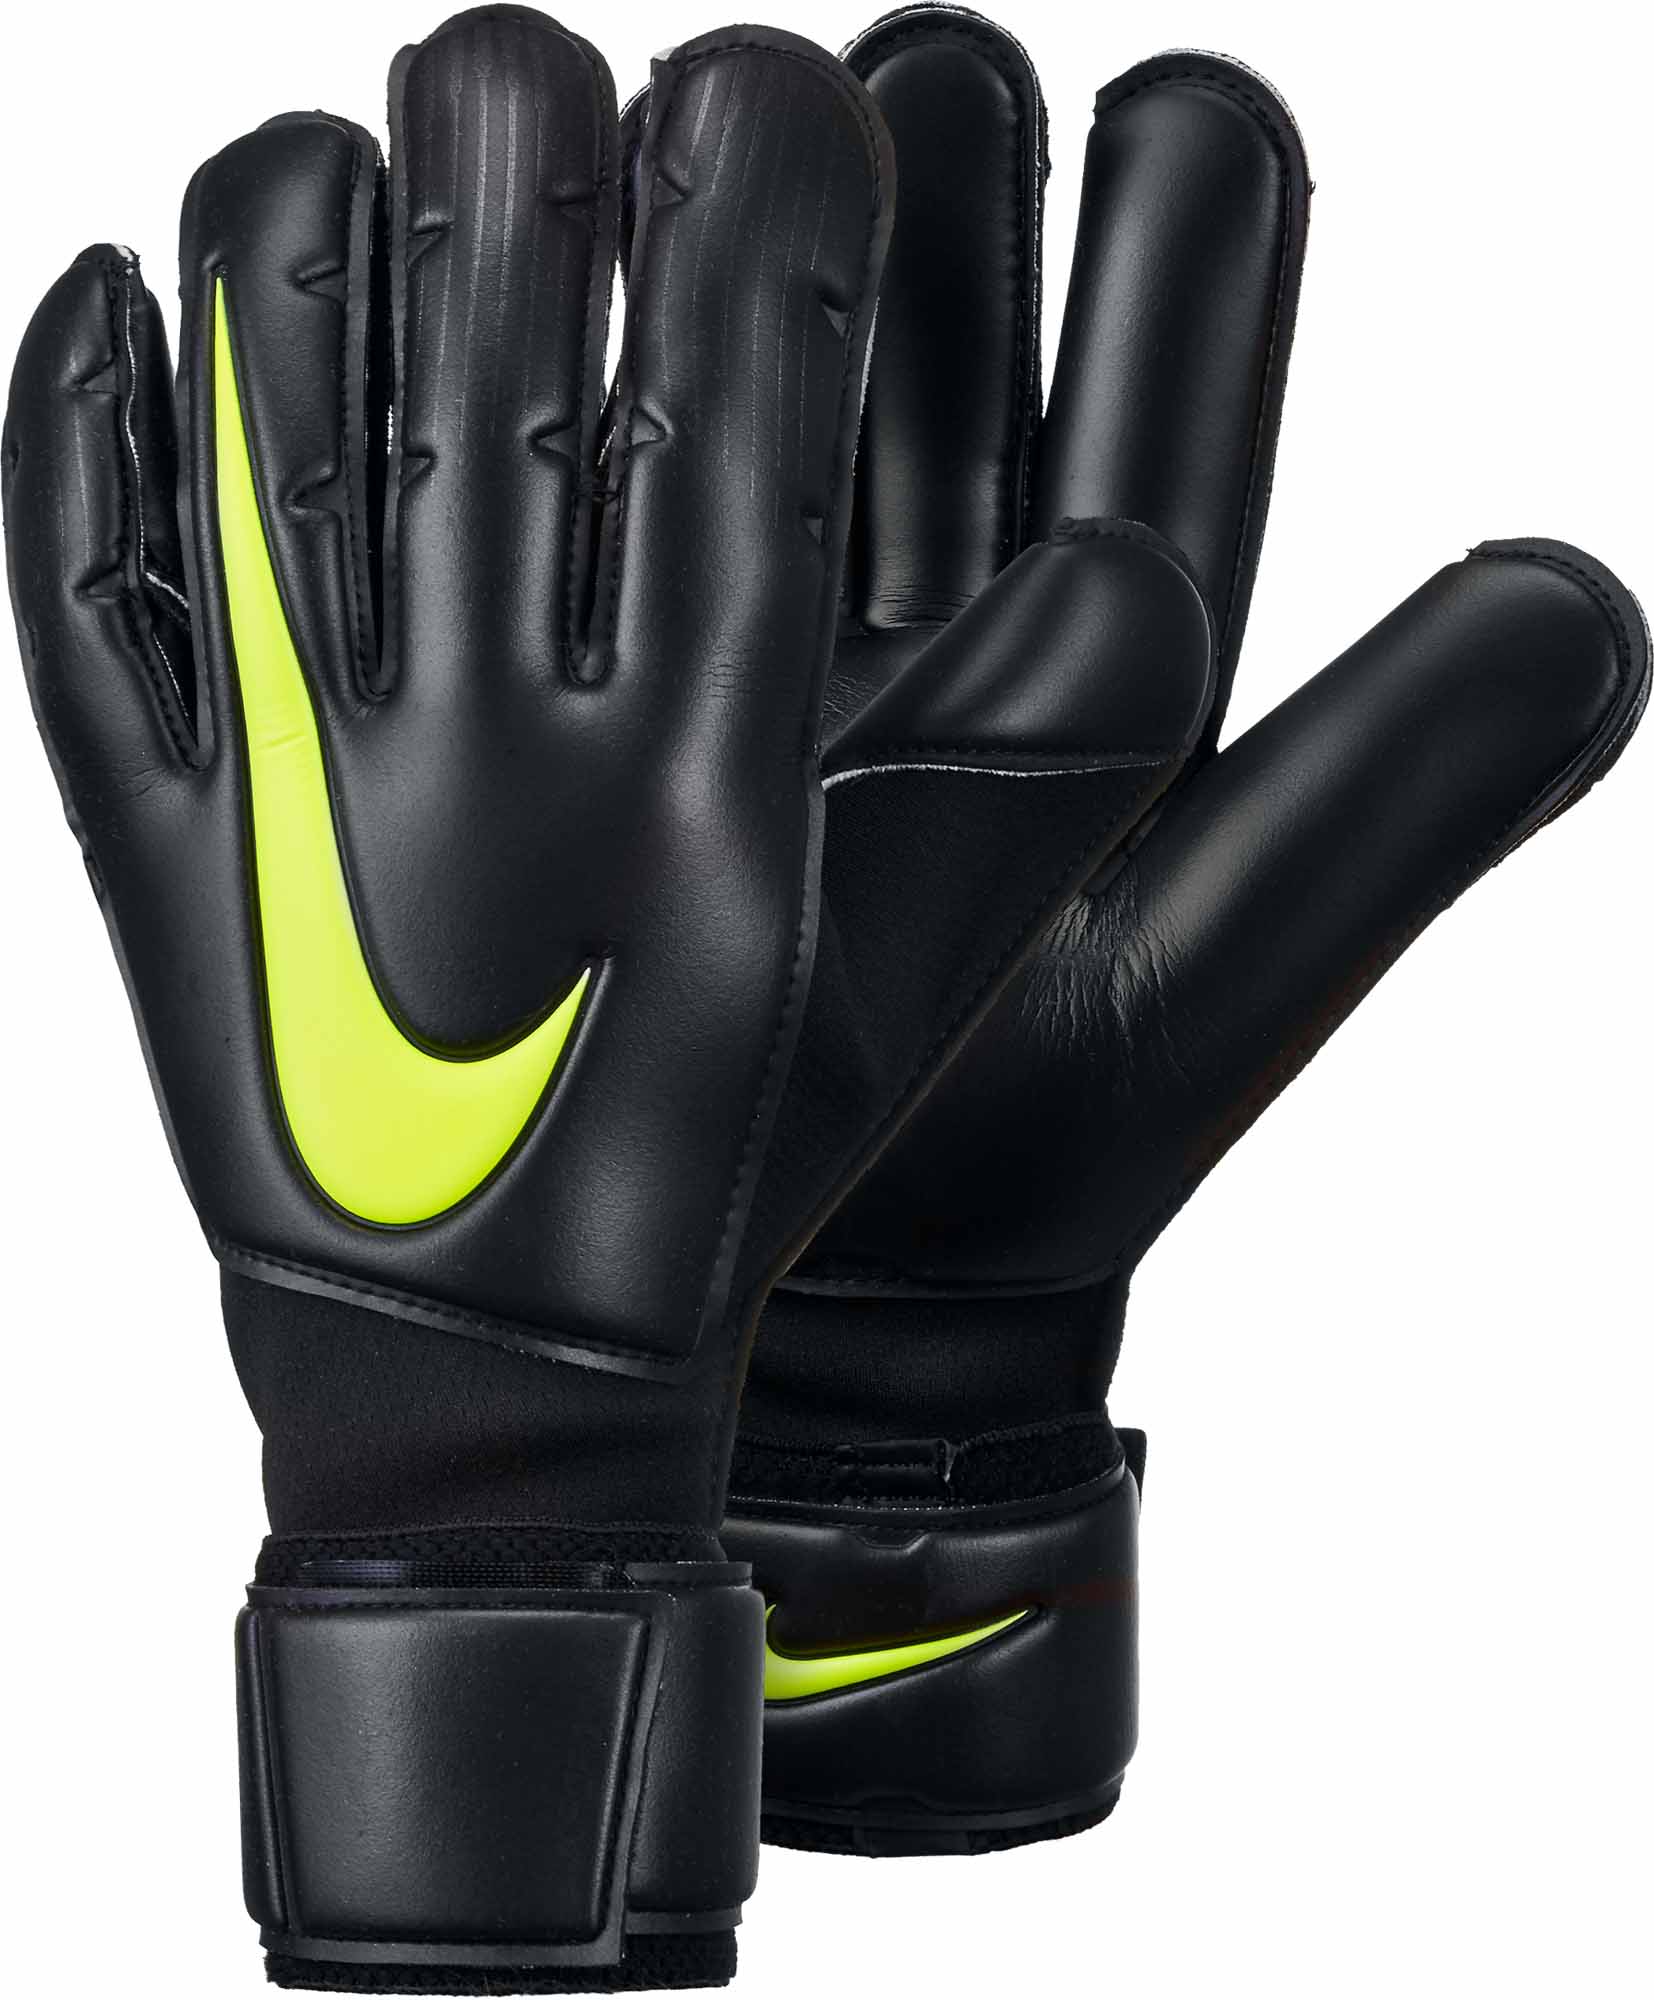 nike vapor 3 football gloves